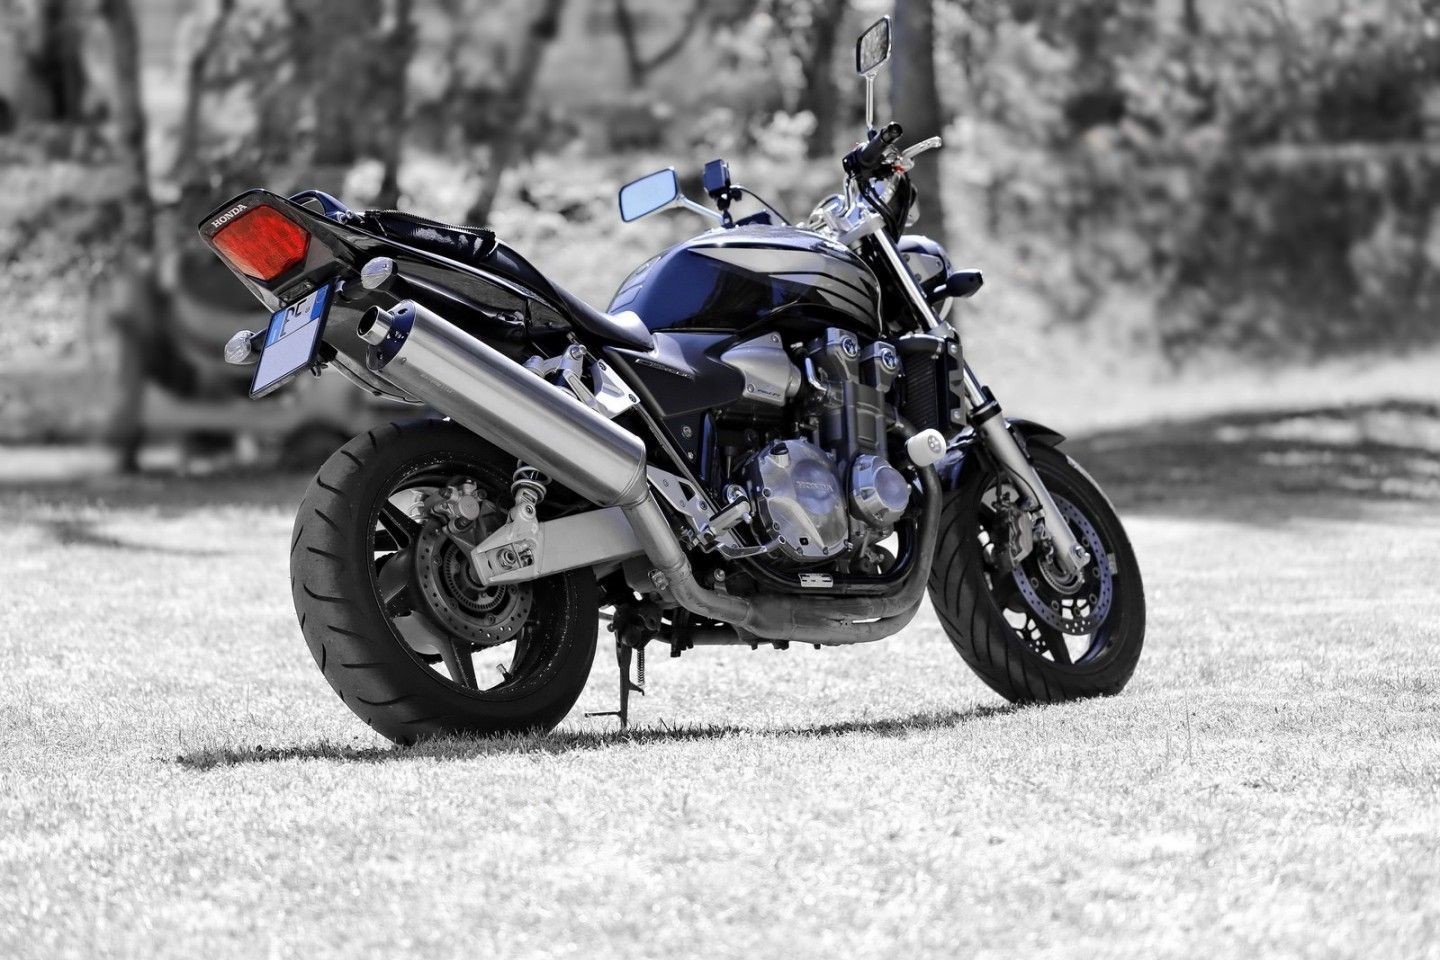 تصویر سیاه و سفید موتور Honda CB1300 مختص پروفایل